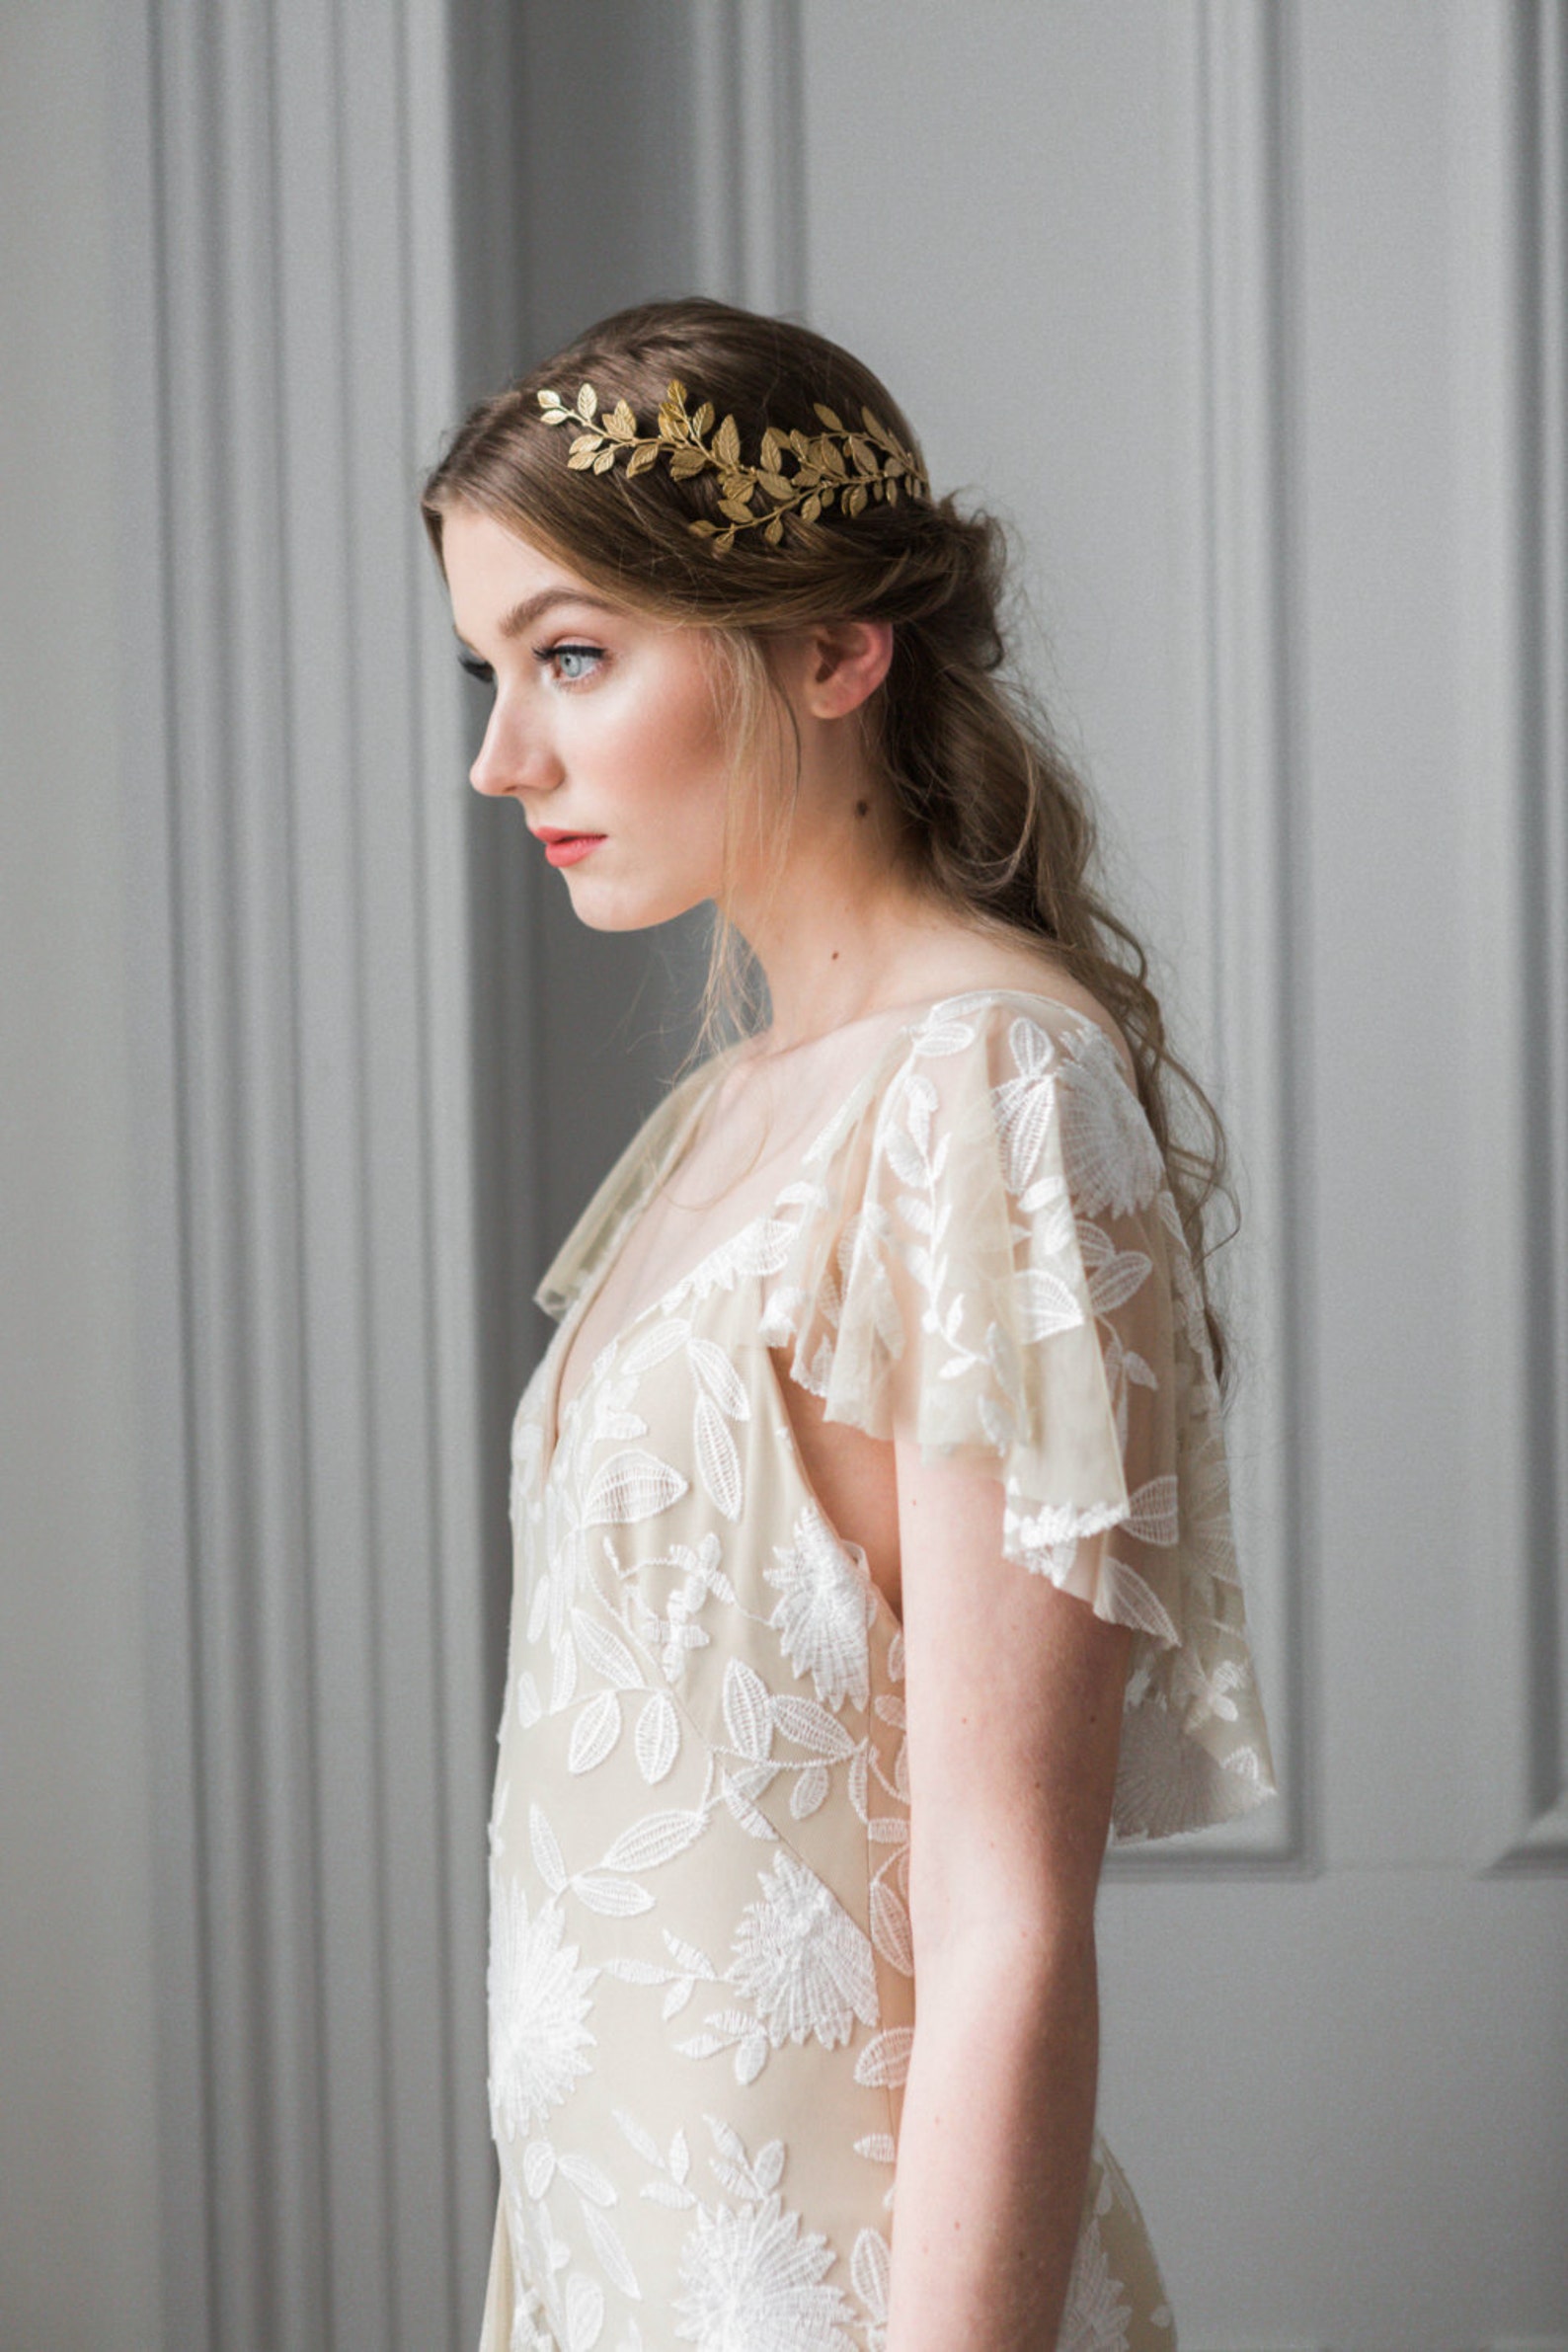 Alena Wrap Headpiece Gold Crown Bridal Headpiece Boho | Etsy